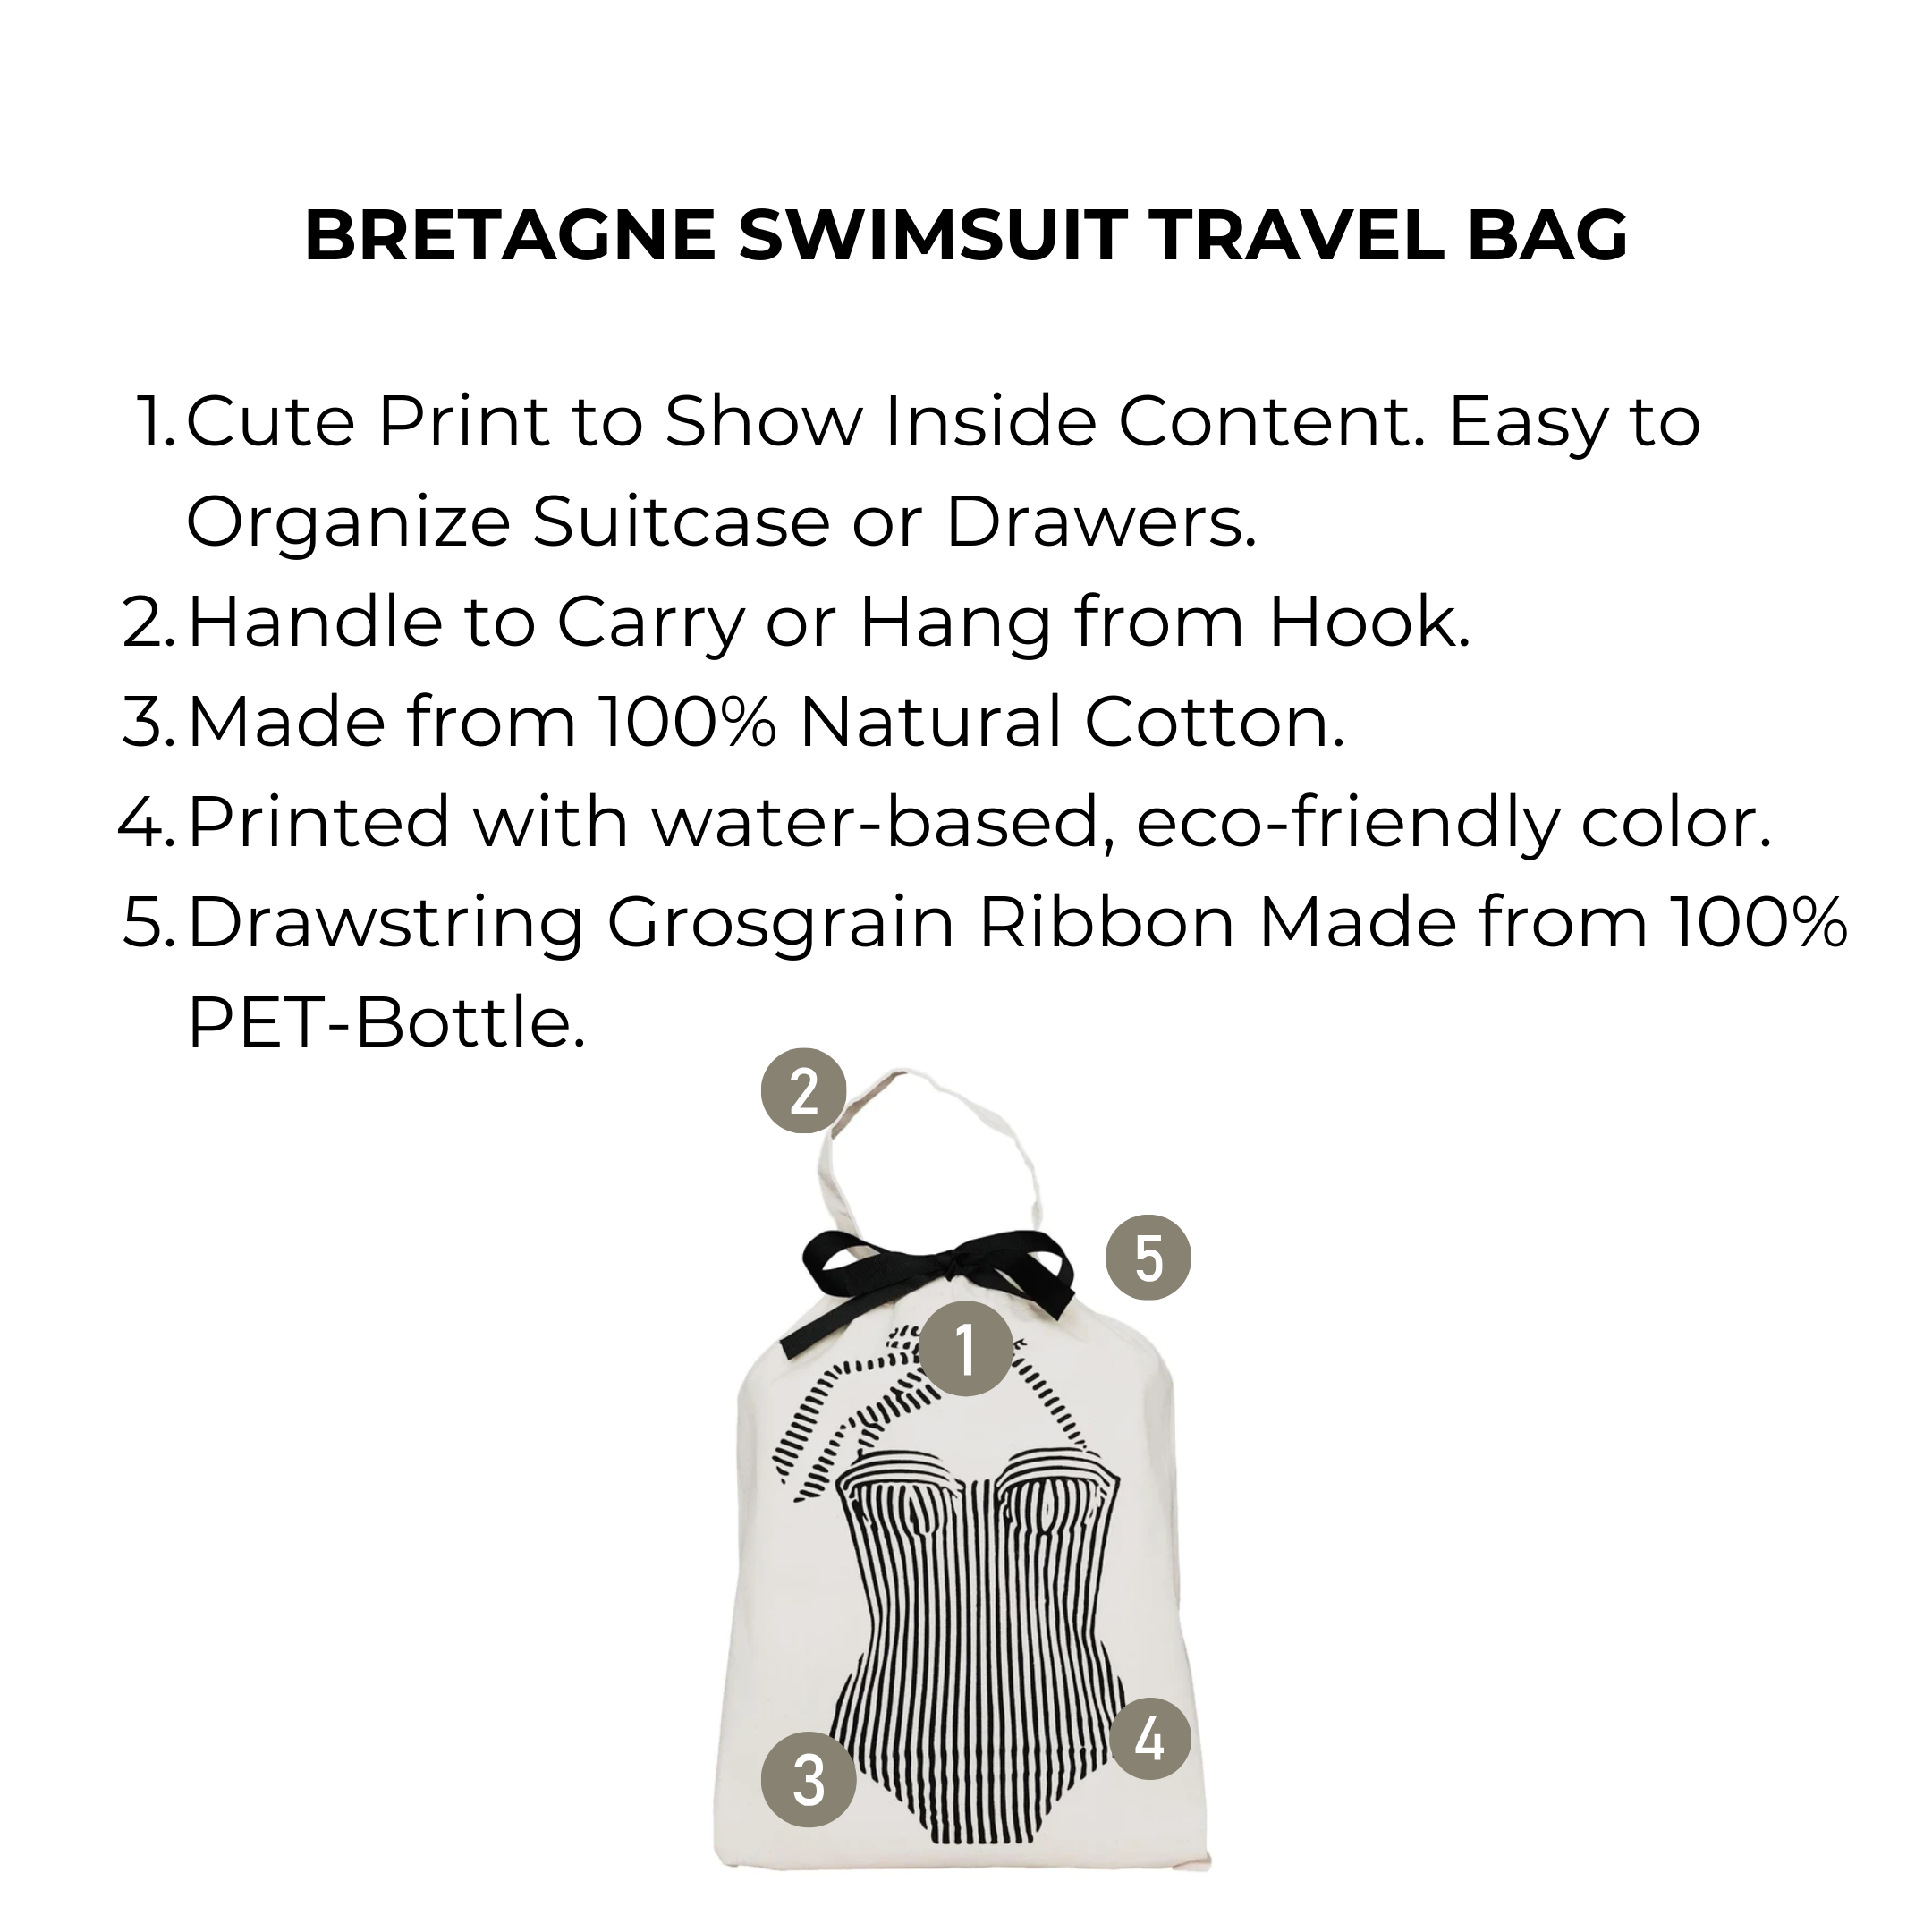 Bretagne Swimsuit Travel Bag, Cream | Bag-all